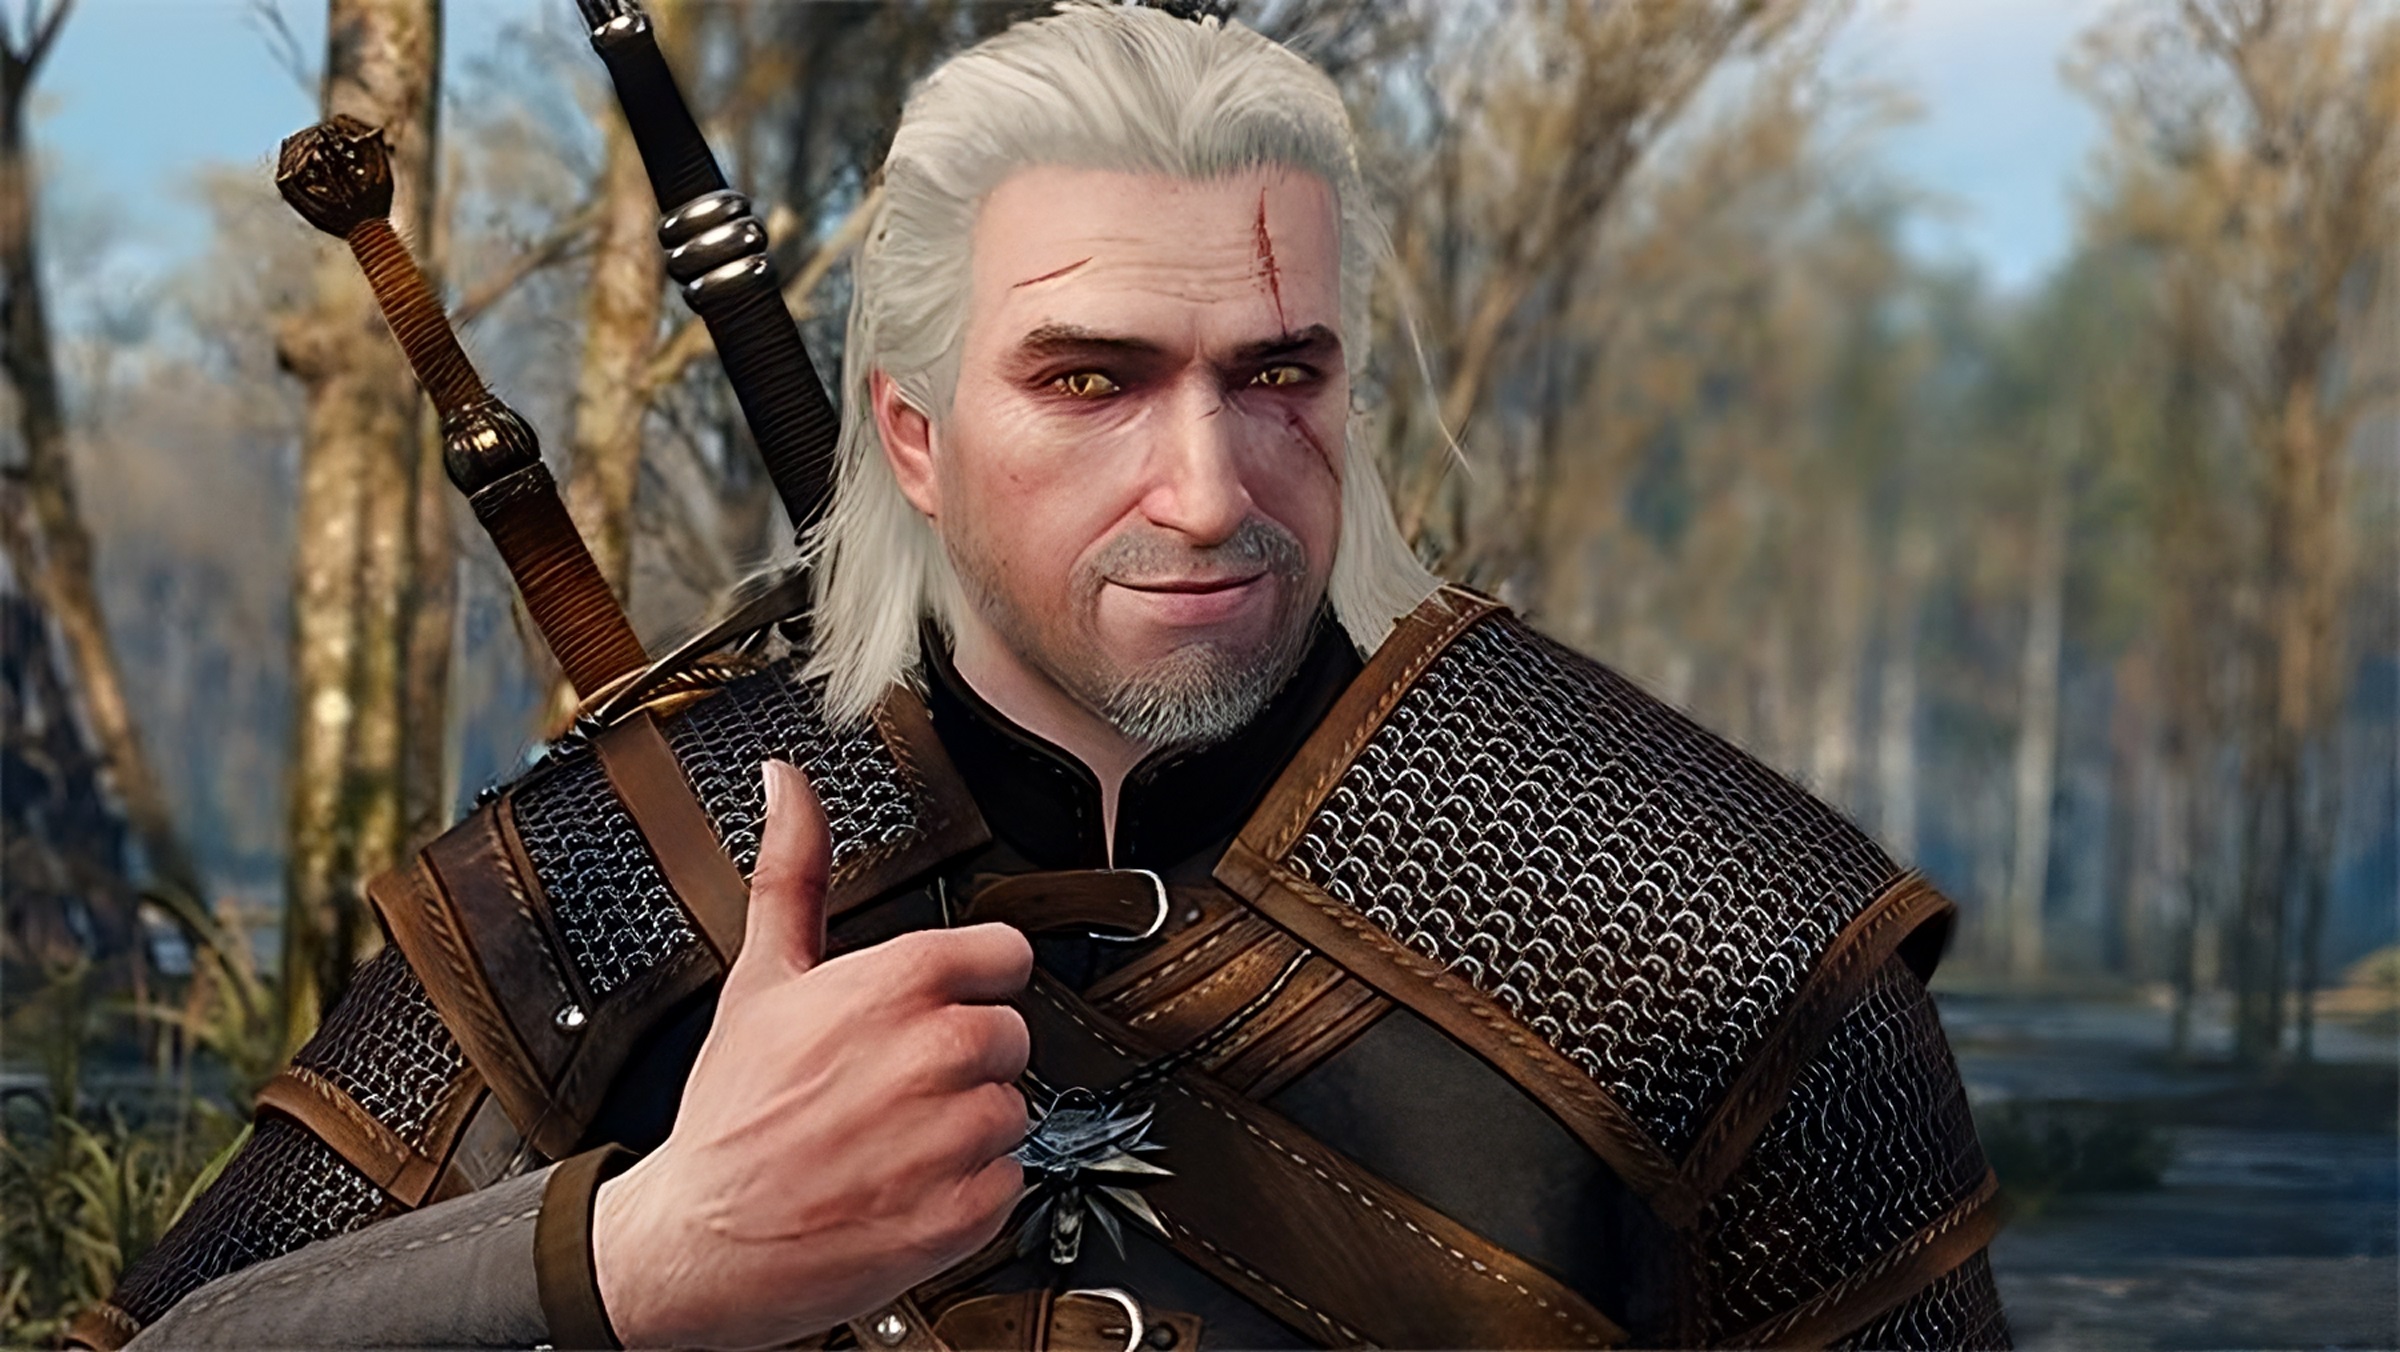 Geralt, sans gants, levant le pouce en haute définition